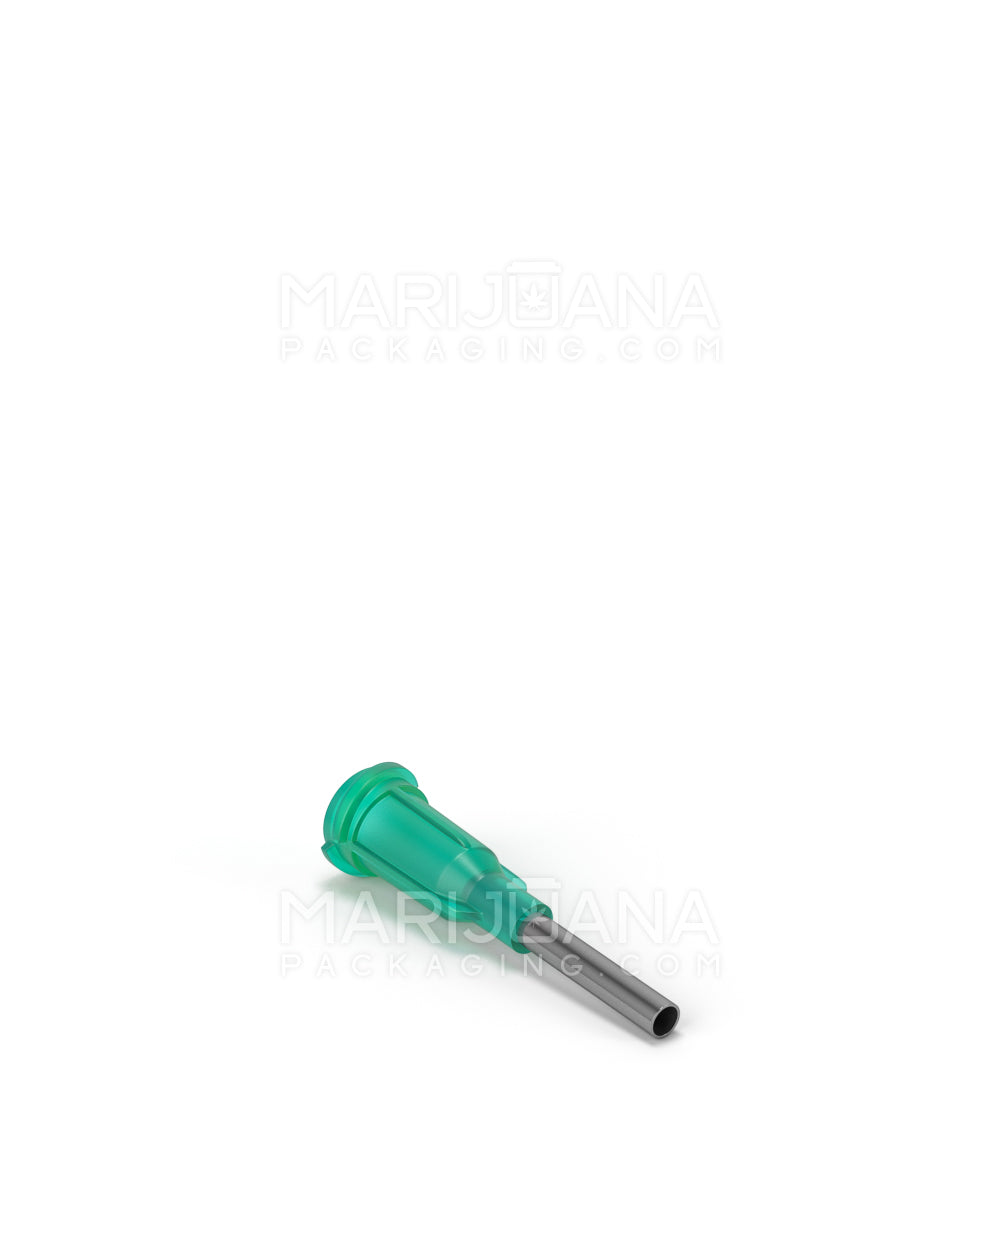 Green Replacement Needles | 0.5in - 14 Gauge | Sample - 3